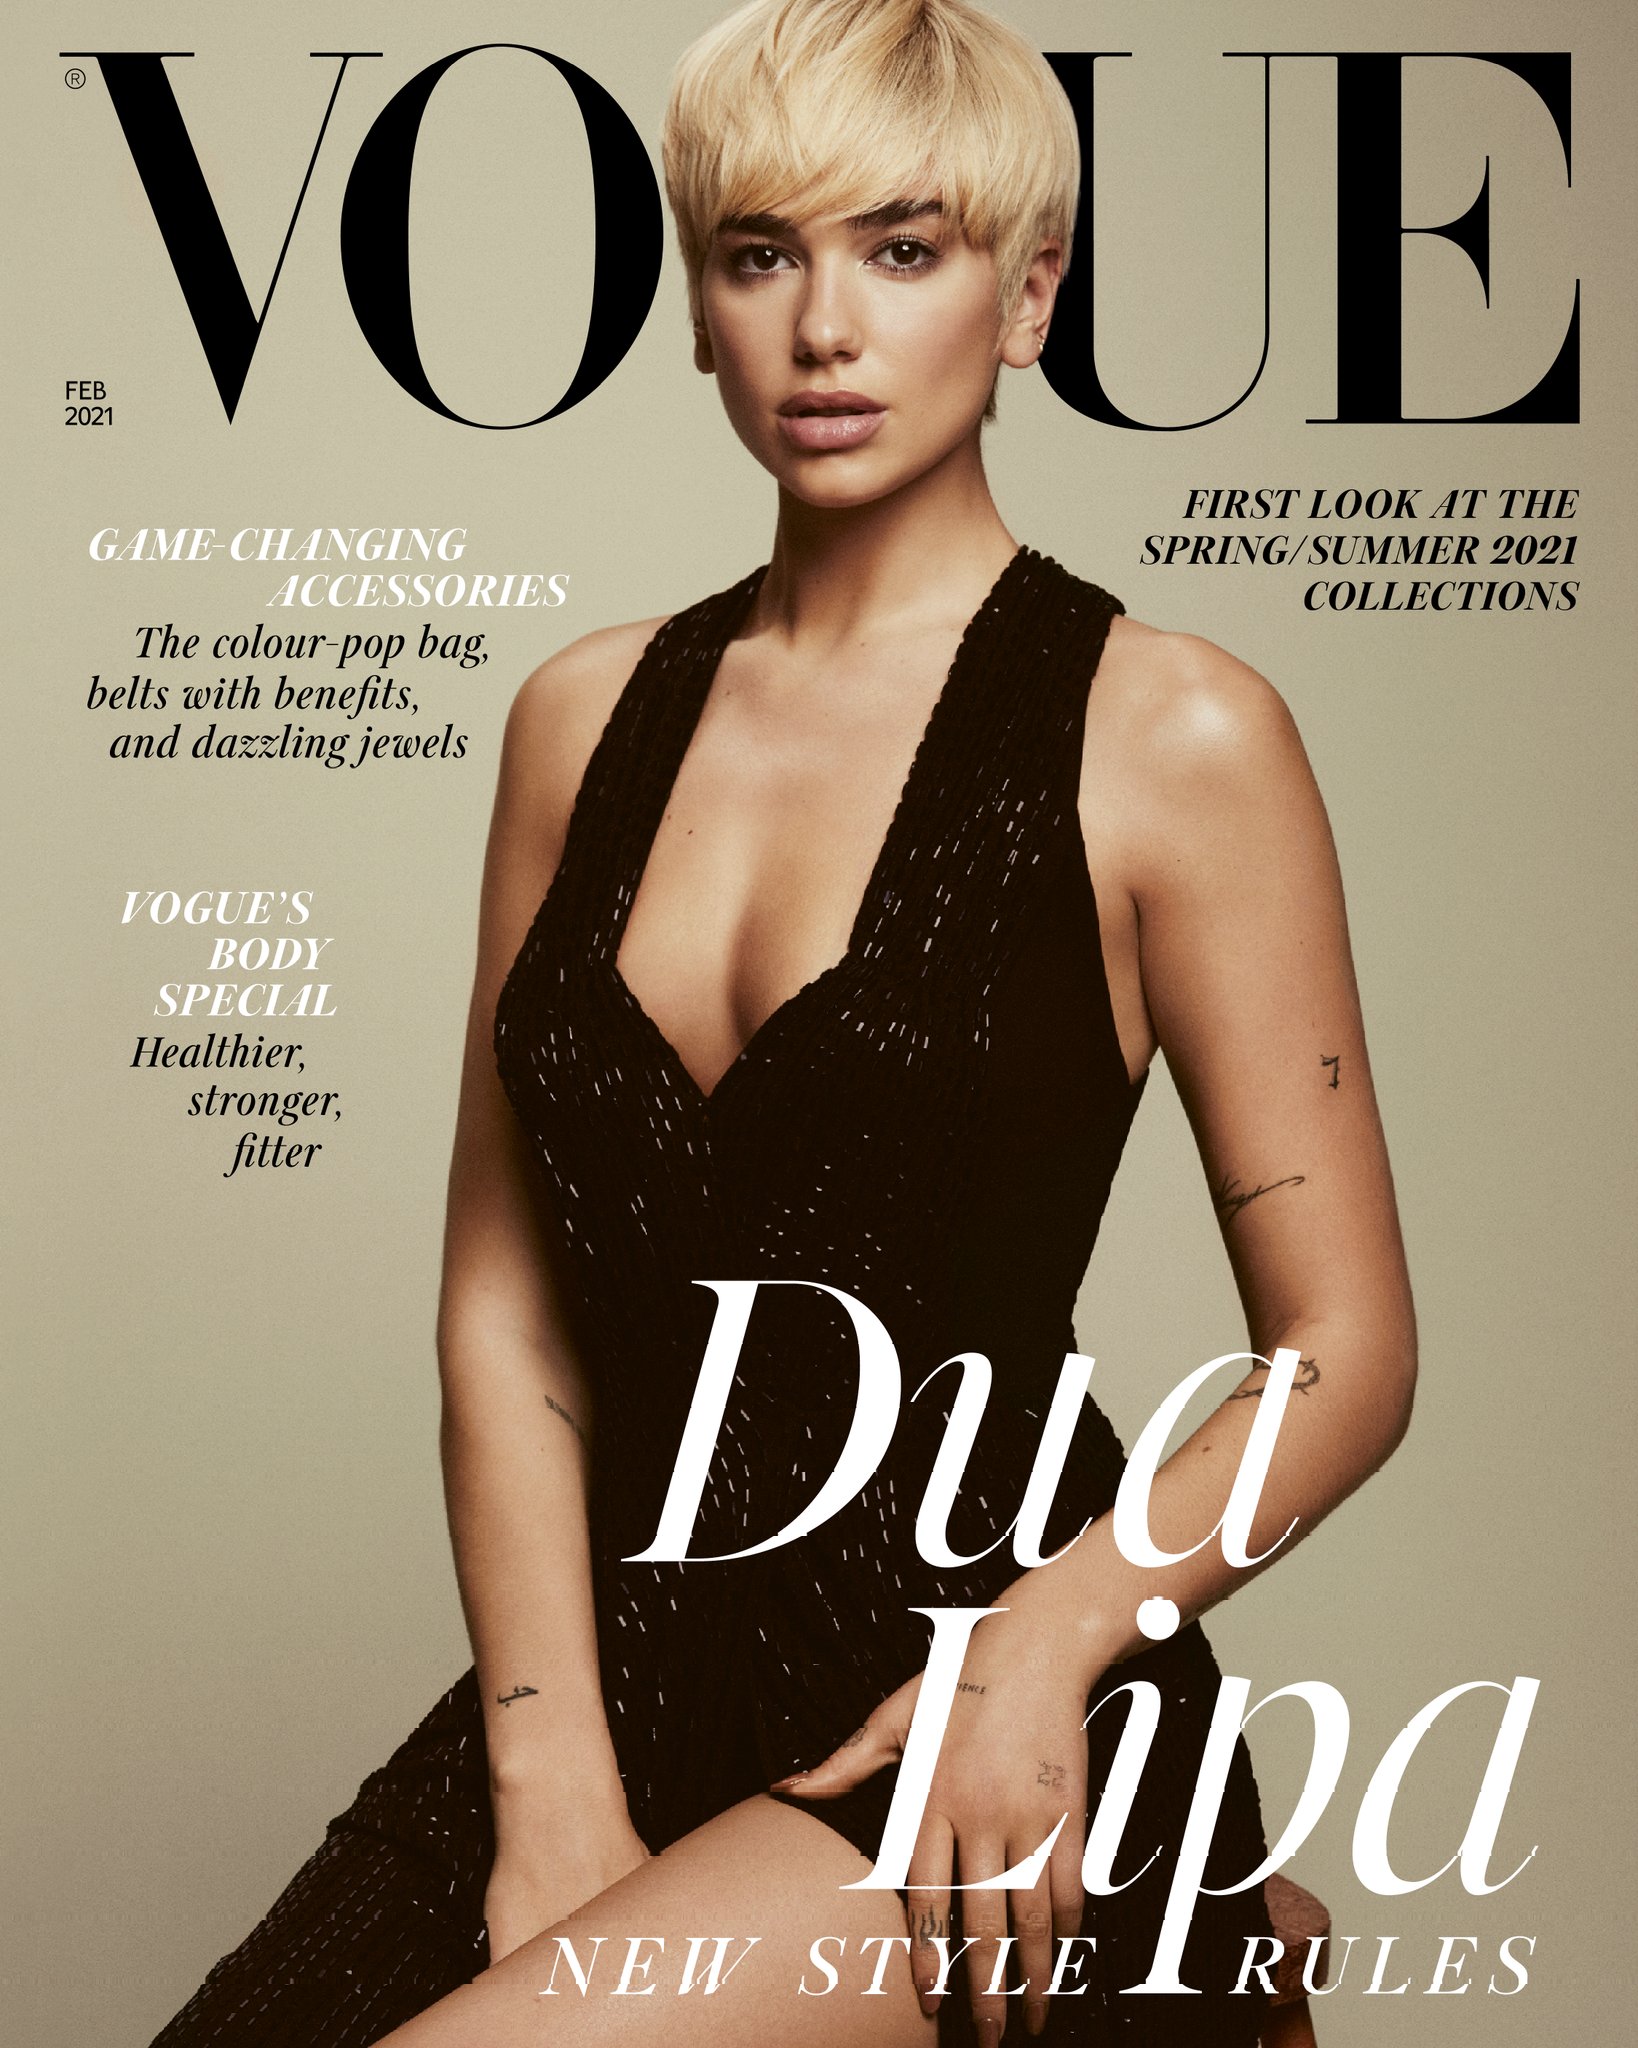 Dua Lipa hyn në historinë e revistës “Vogue”, pushton kopertinën e numrit më të ri